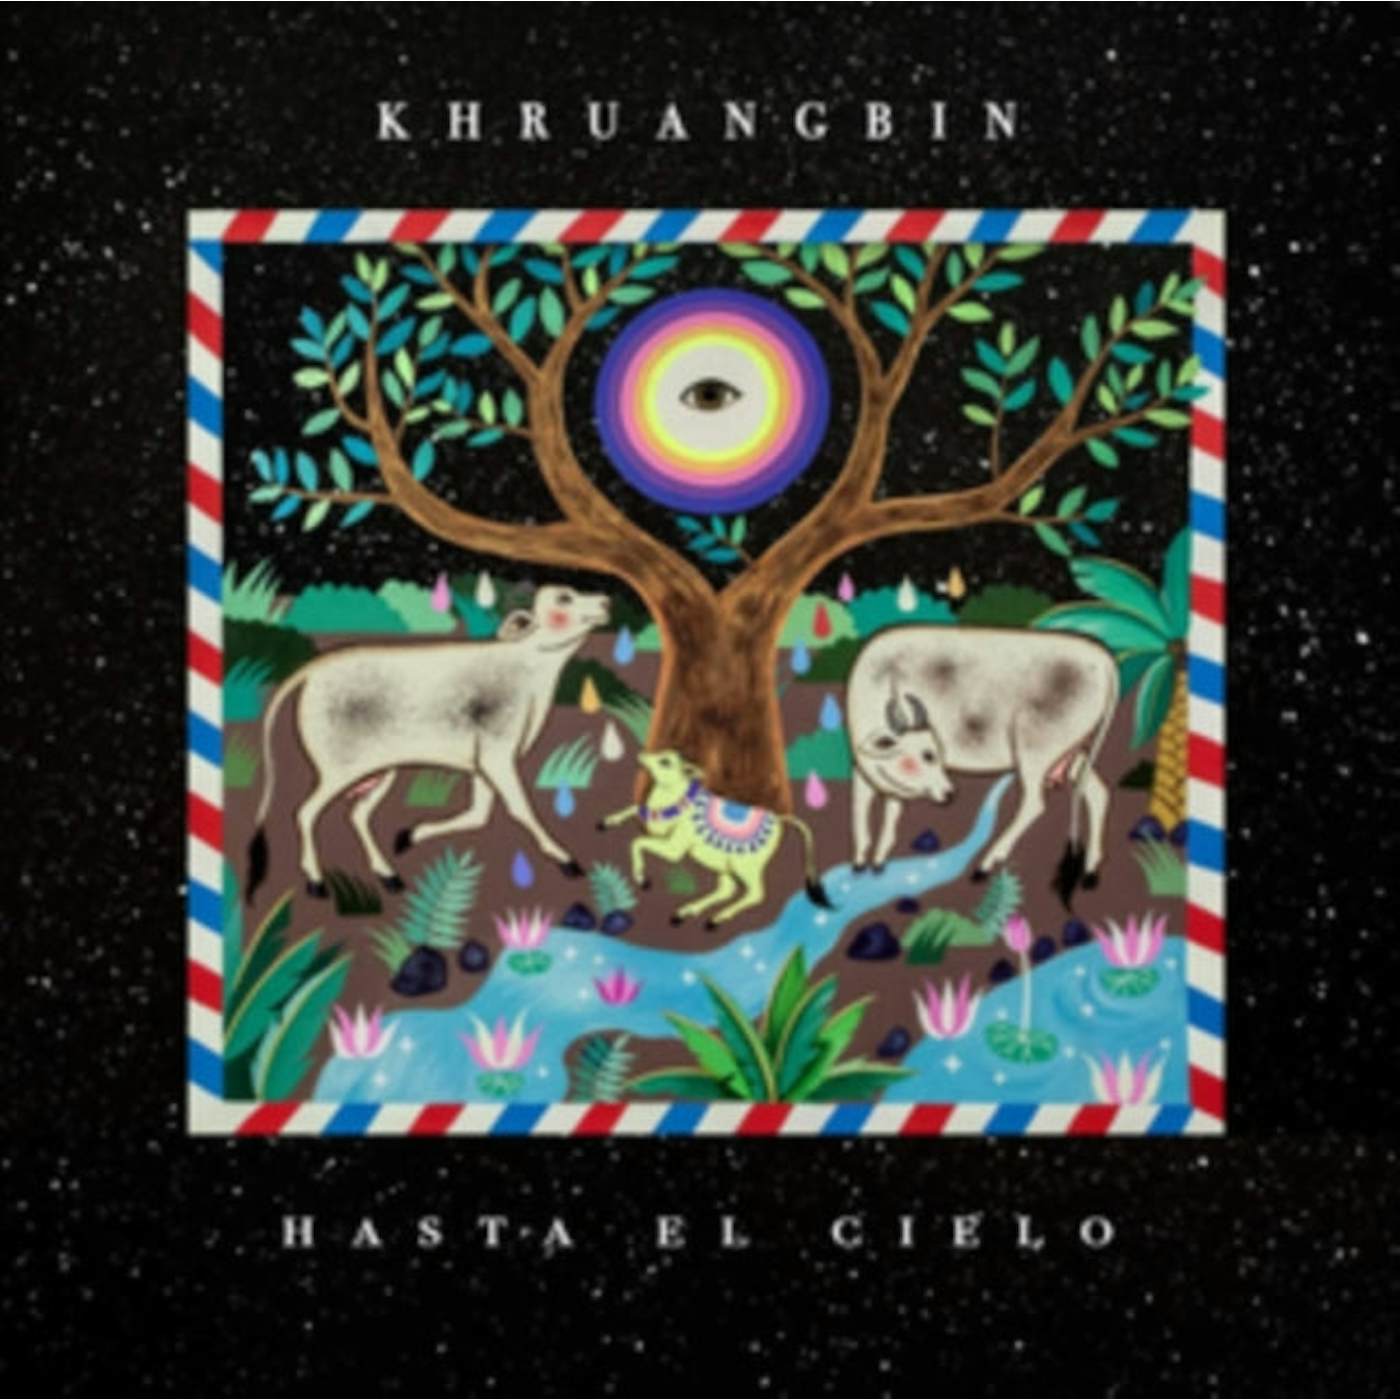 Khruangbin LP Vinyl Record + 7" - Hasta El Cielo (Black Vinyl)